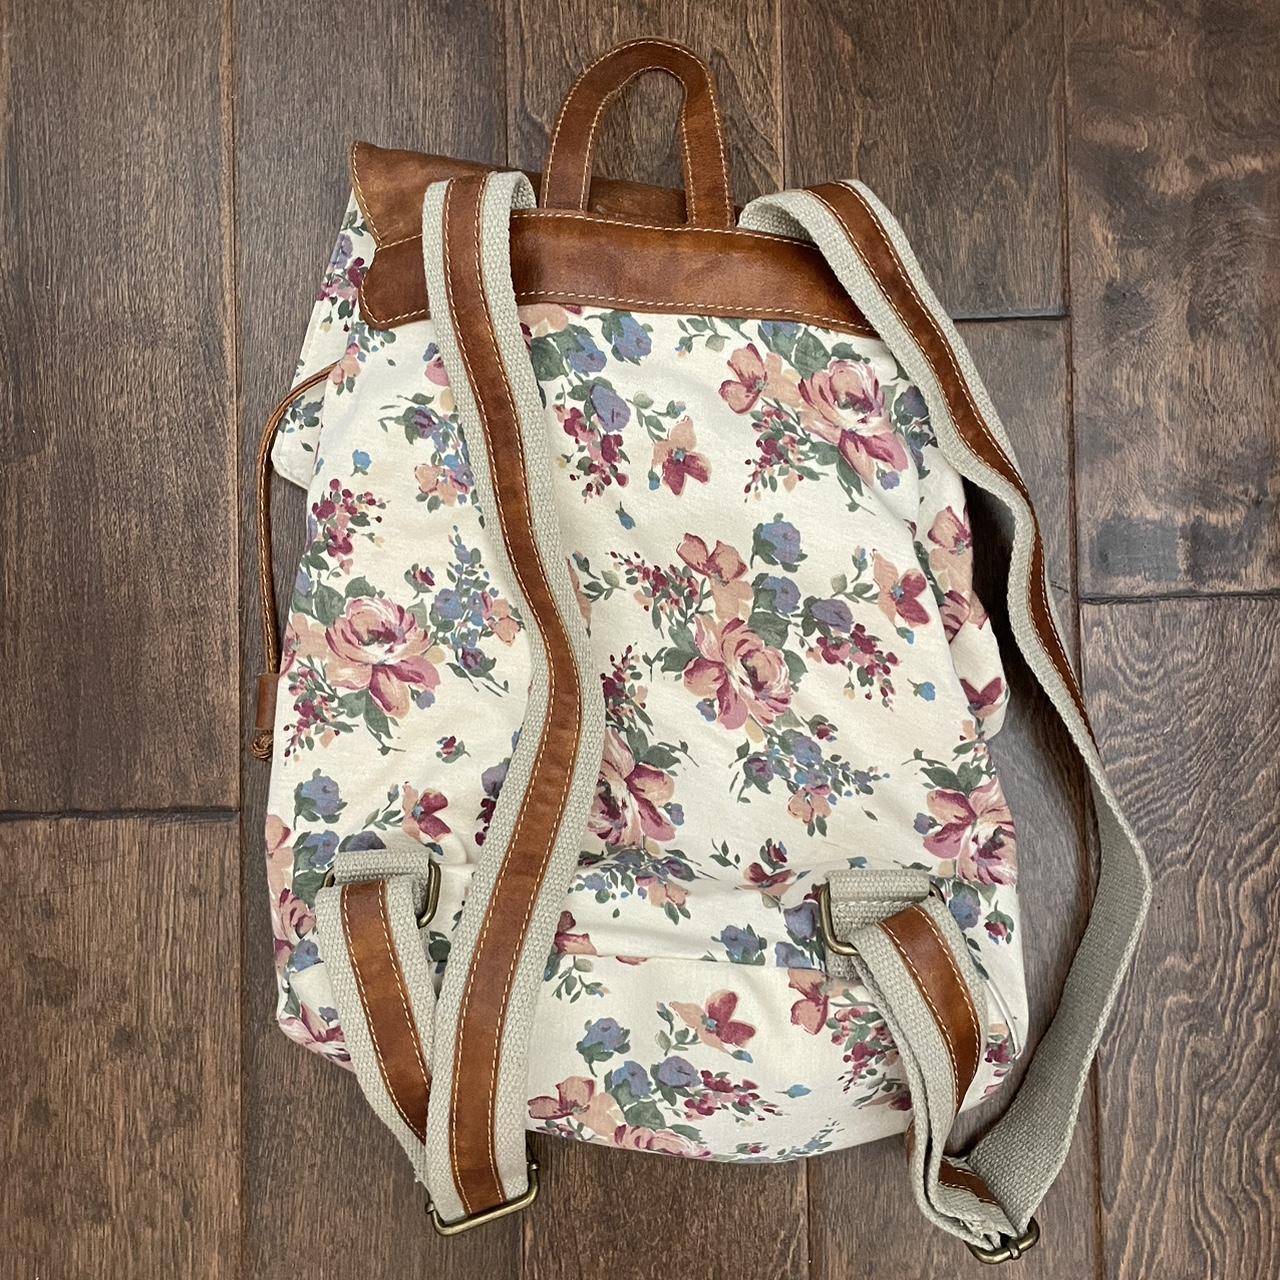 Brandy Melville Women's Bag - Multi